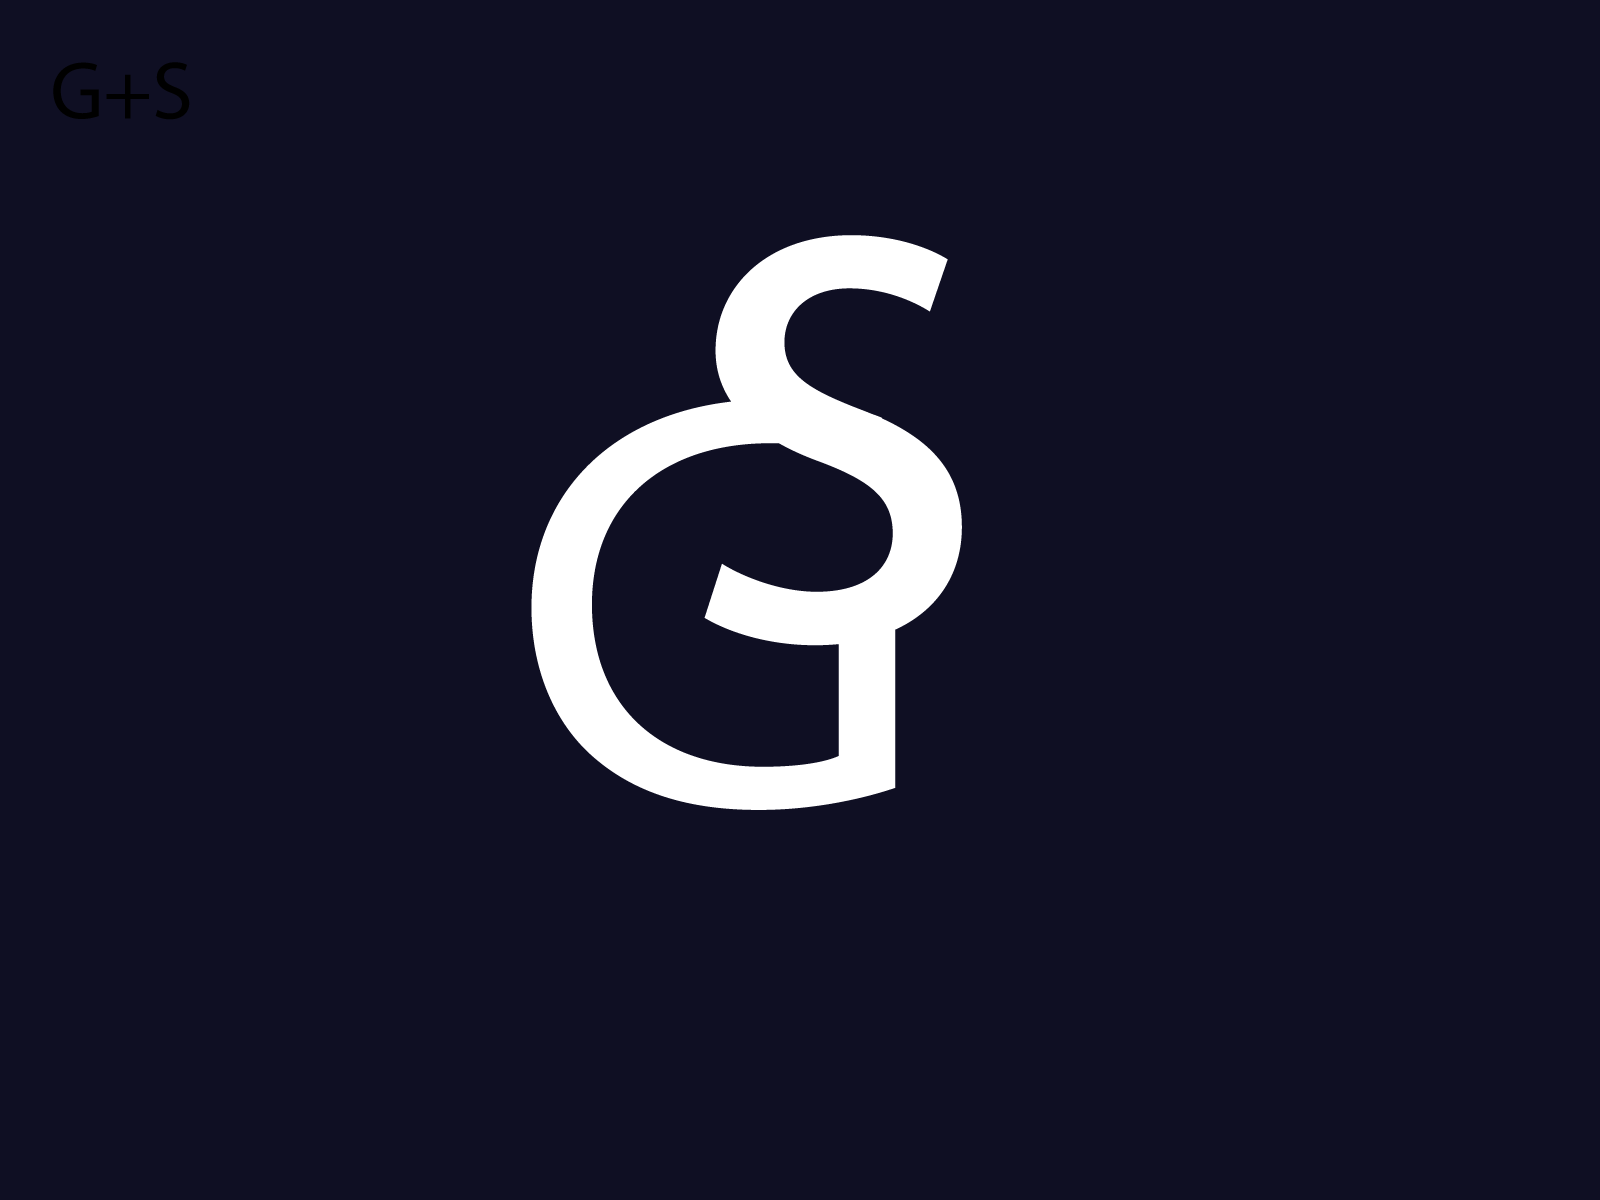 LOGO G+S blue design flat g gs illustrator logo s